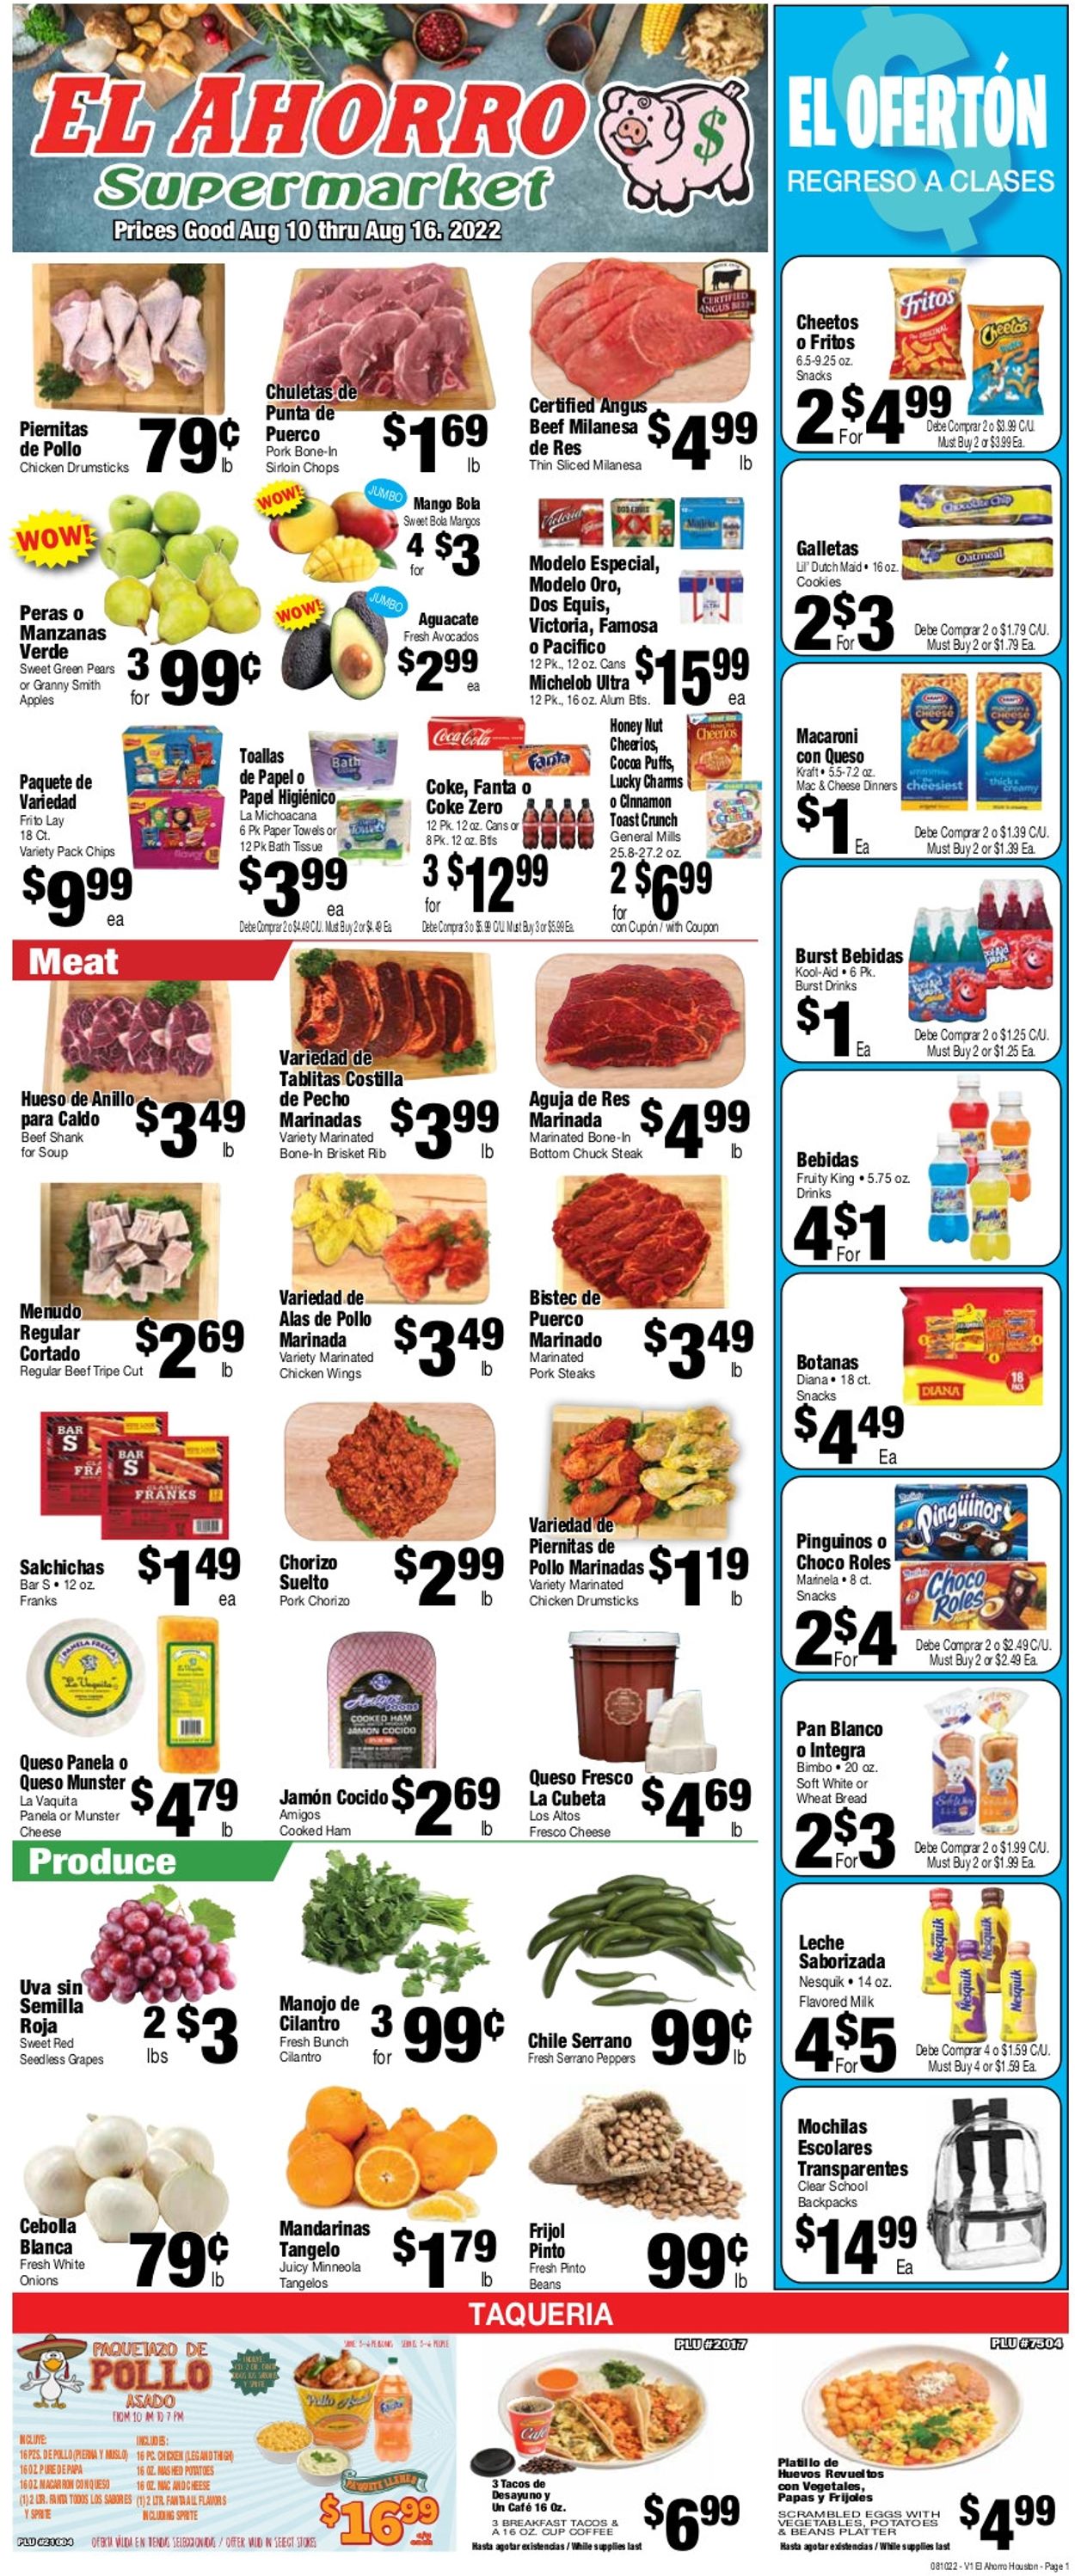 El Ahorro Supermarket Weekly Ad Circular - valid 08/10-08/16/2022